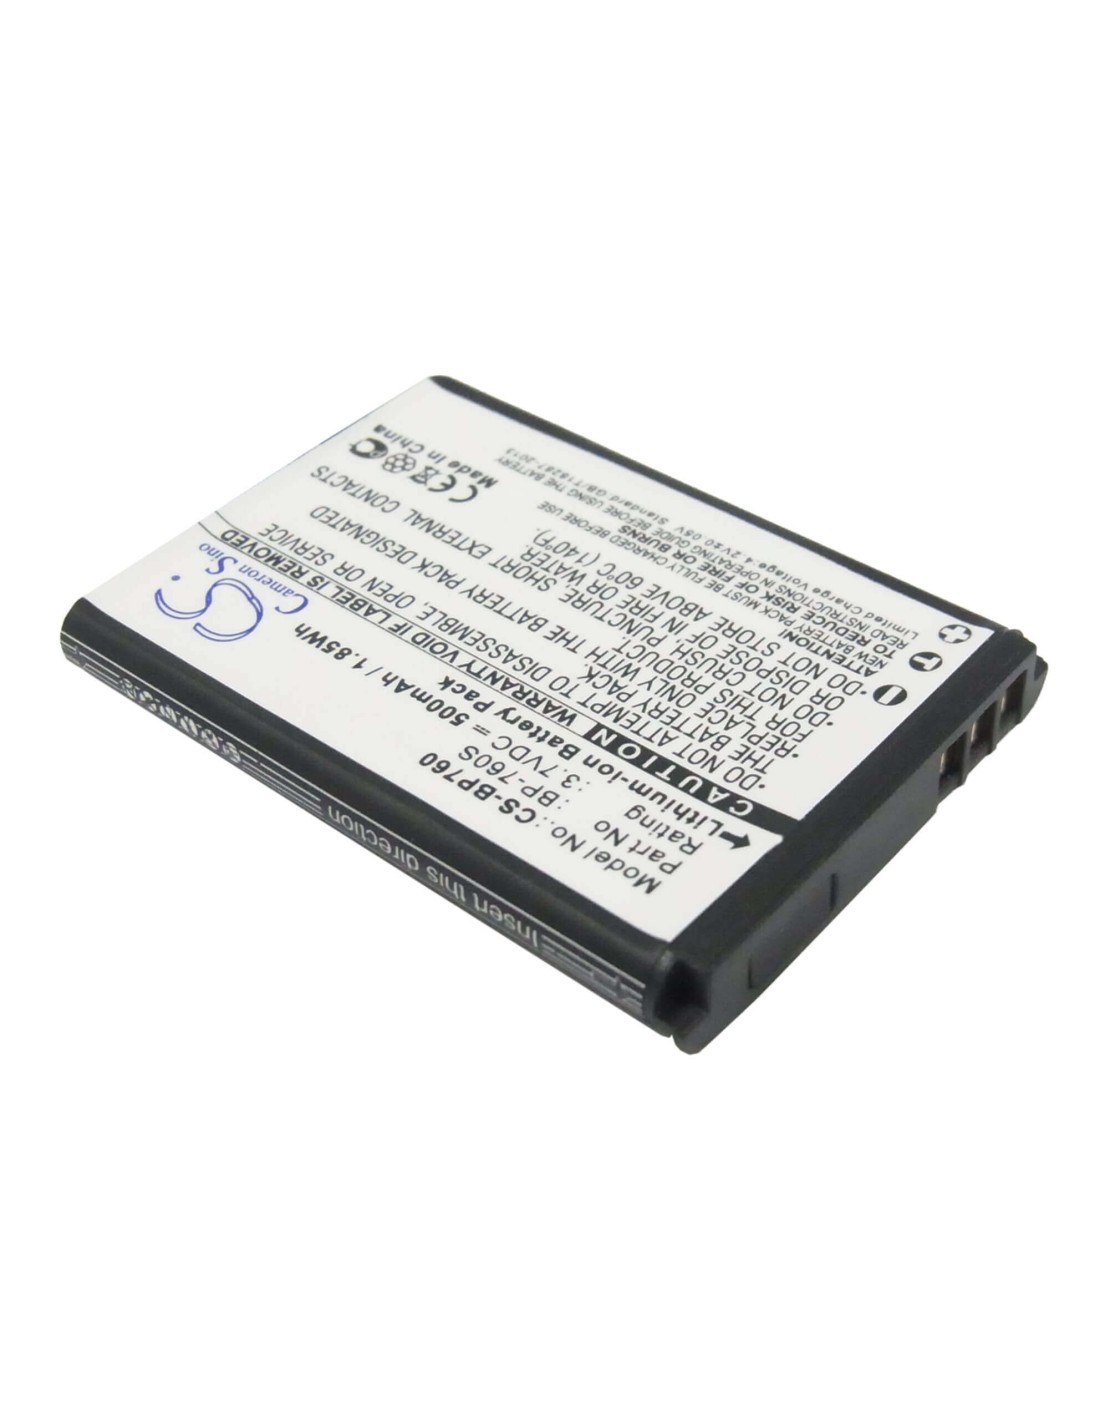 Battery for Kyocera I4r, I4rb, I4rbk 3.7V, 500mAh - 1.85Wh